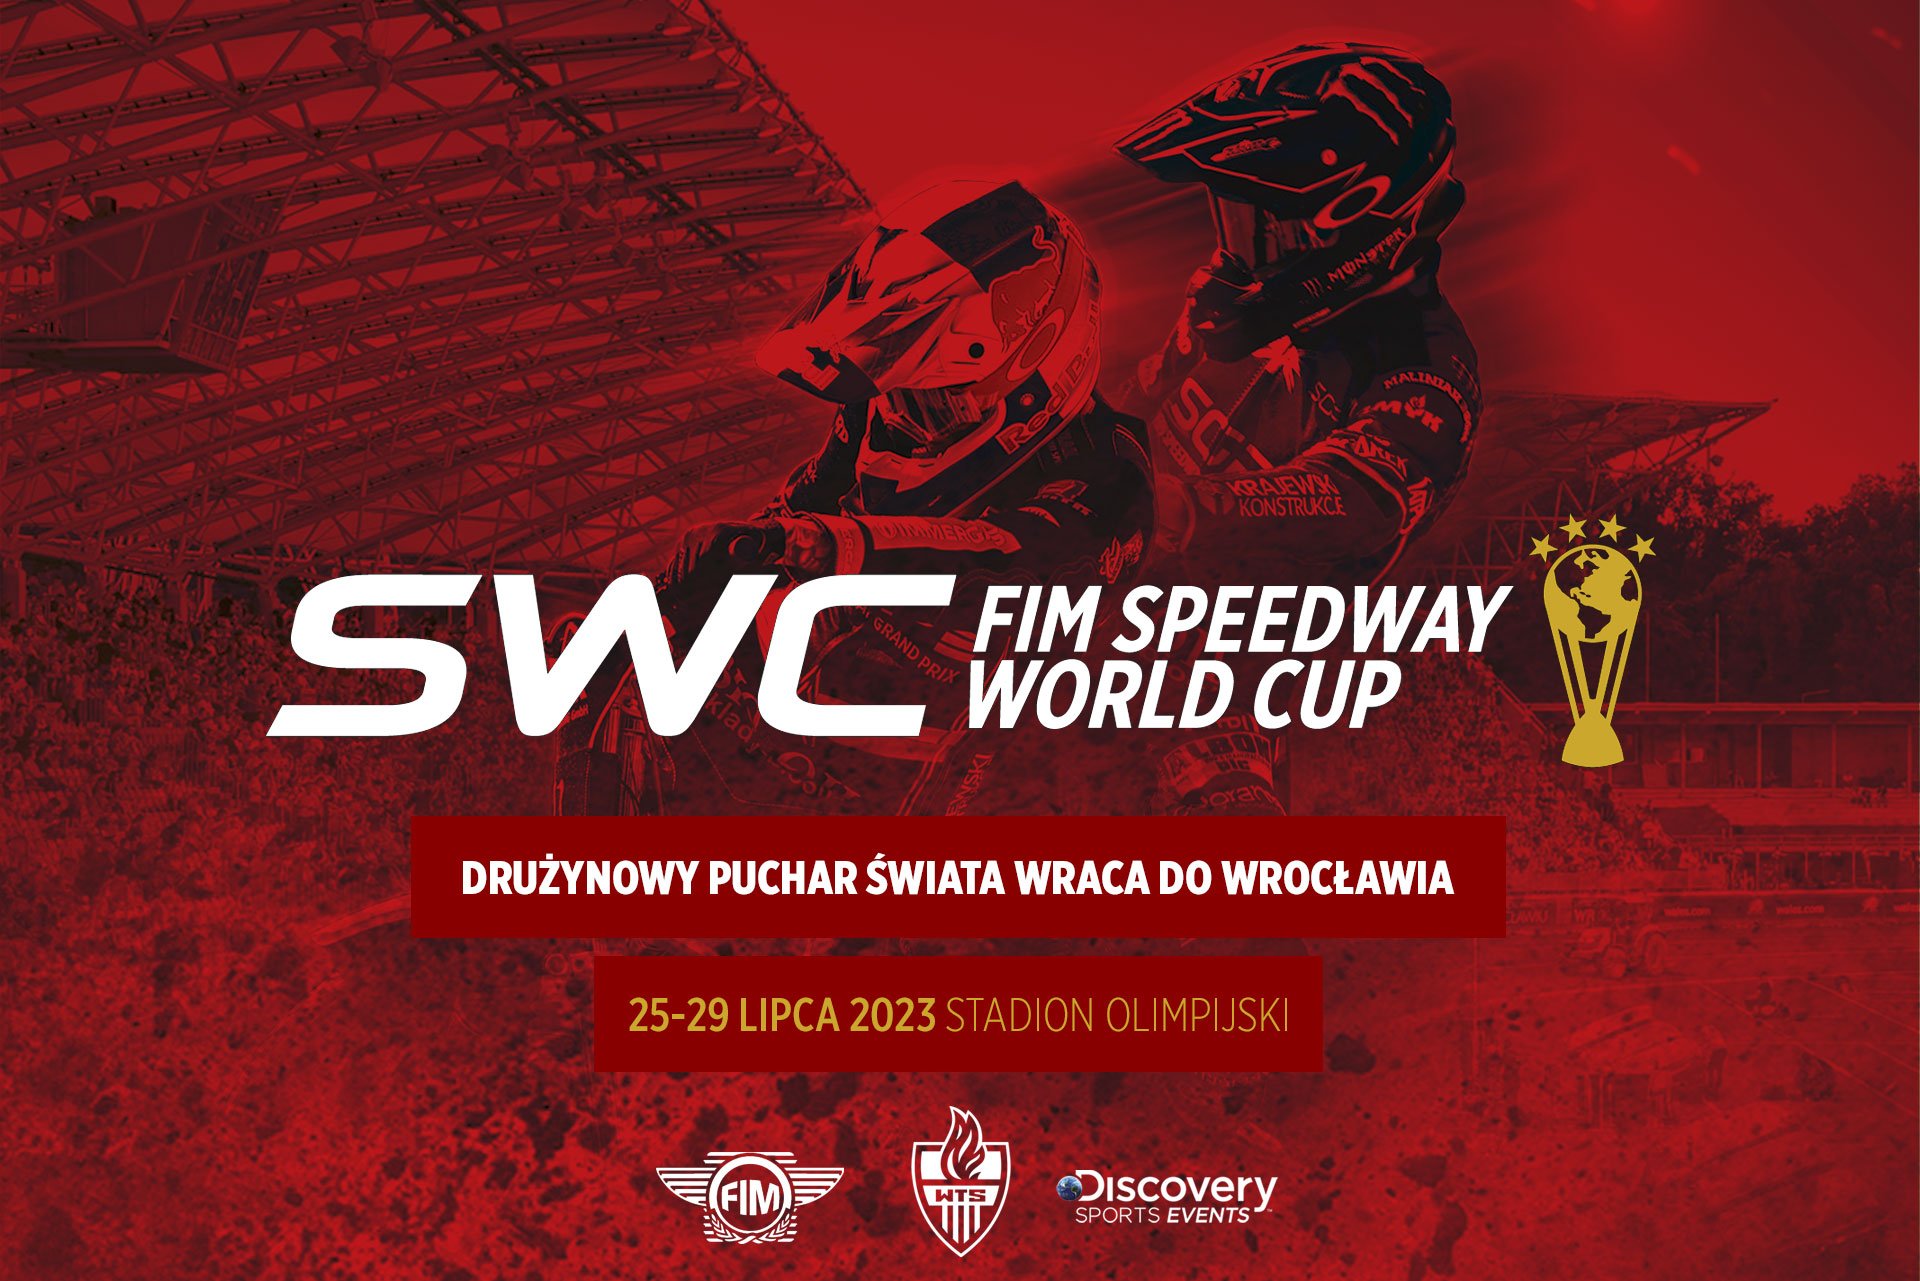 fim speedway world cup